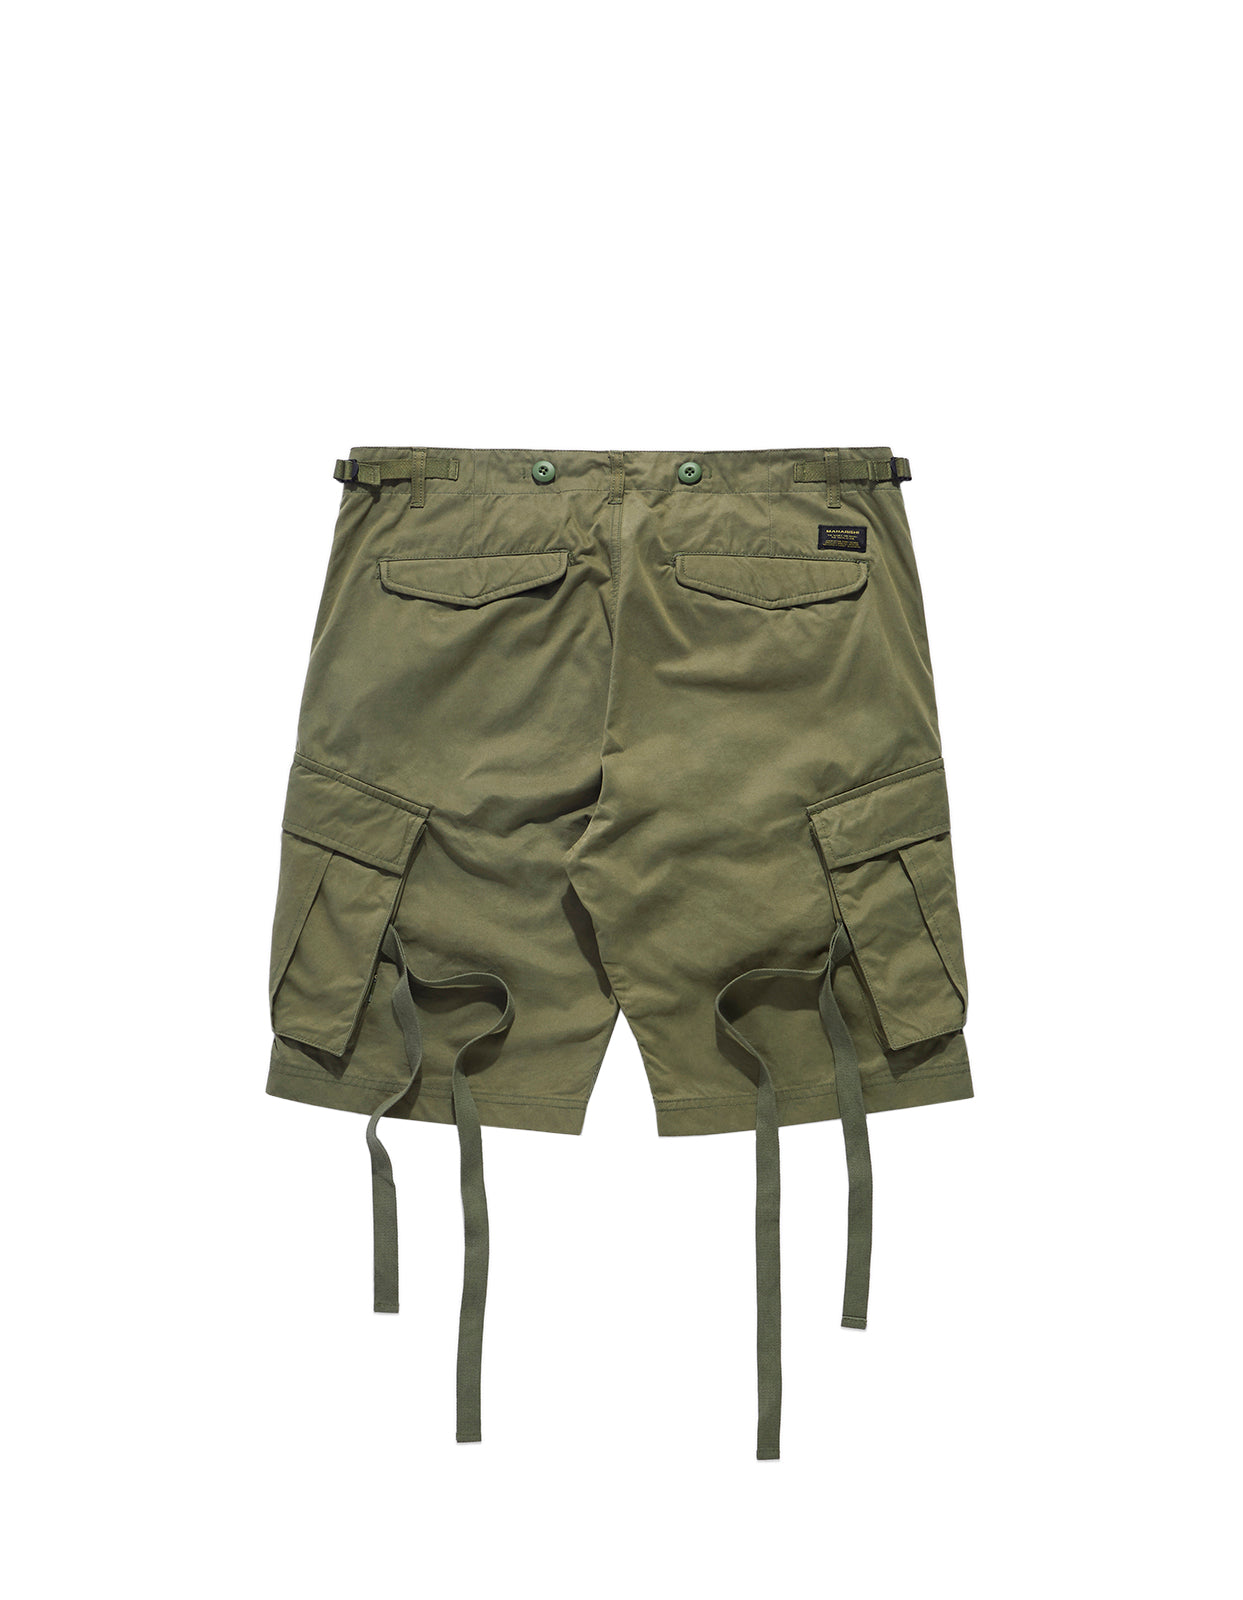 M65 Cargo Shorts